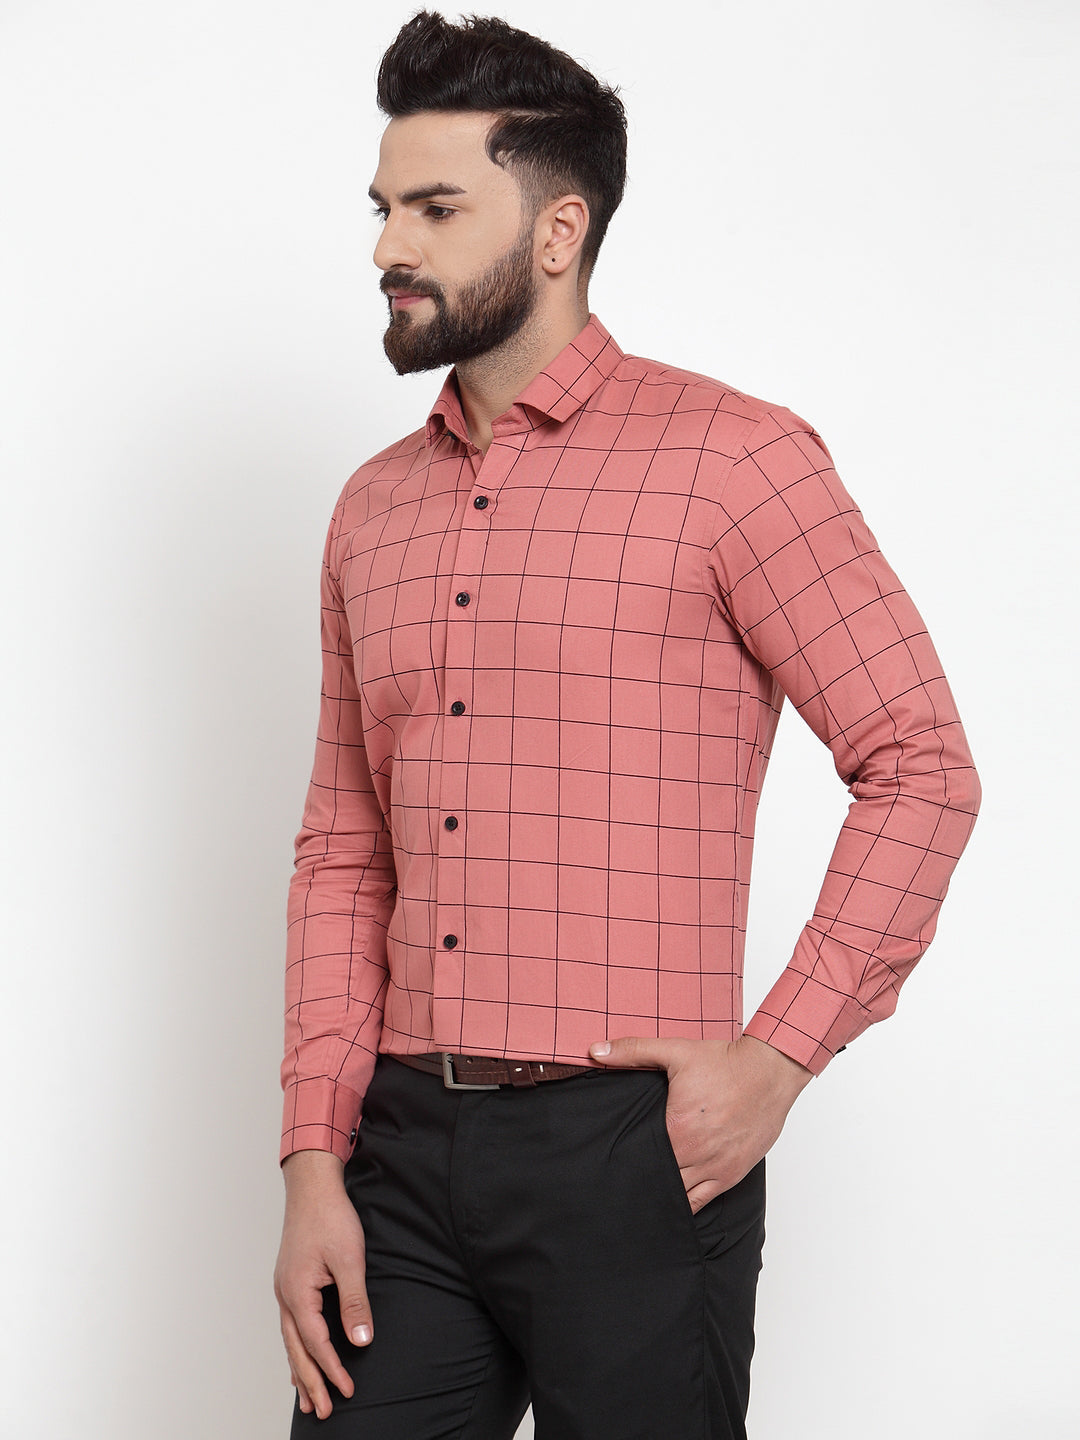 Men's Peach Cotton Checked Formal Shirts ( SF 742Peach ) - Jainish